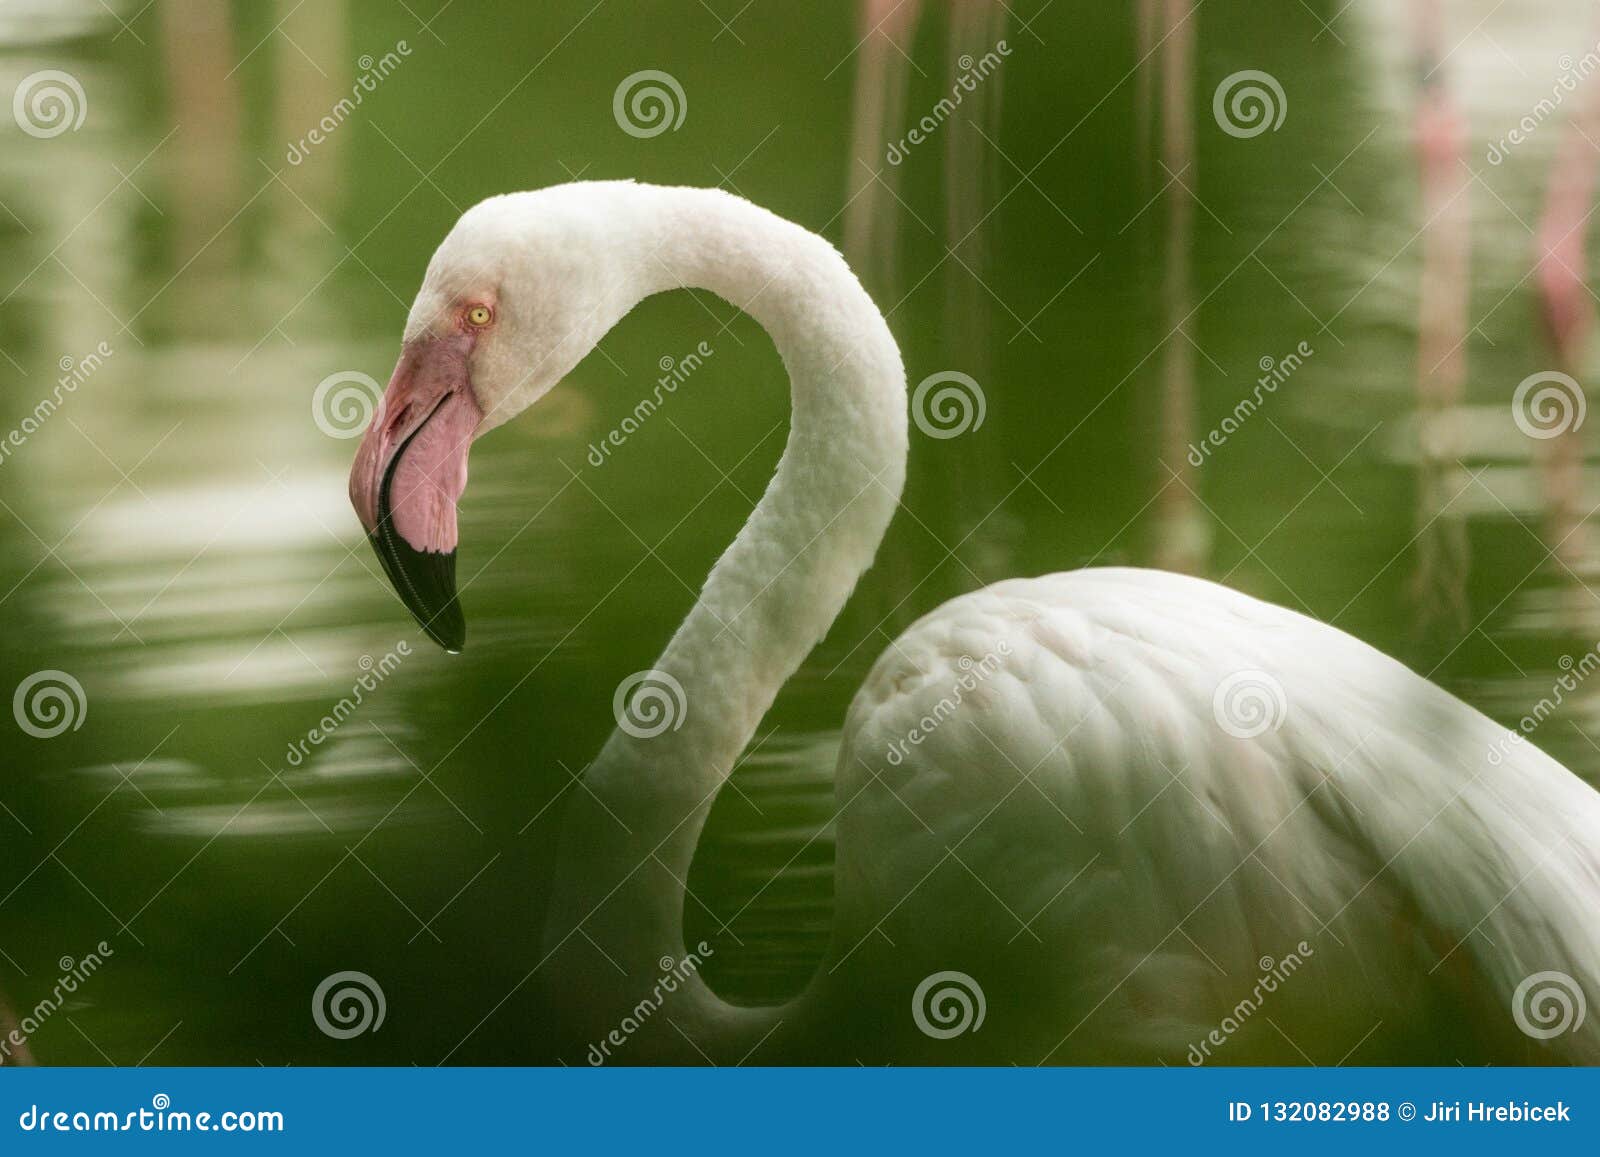 De roze flamingo bij de dierentuin, solo phoenicopterus van het flamingoportret, mooie witte rozeachtige vogel dichtbij vijver, watervogel in zijn milieu, sluit omhoog portret, vogel met grote beake